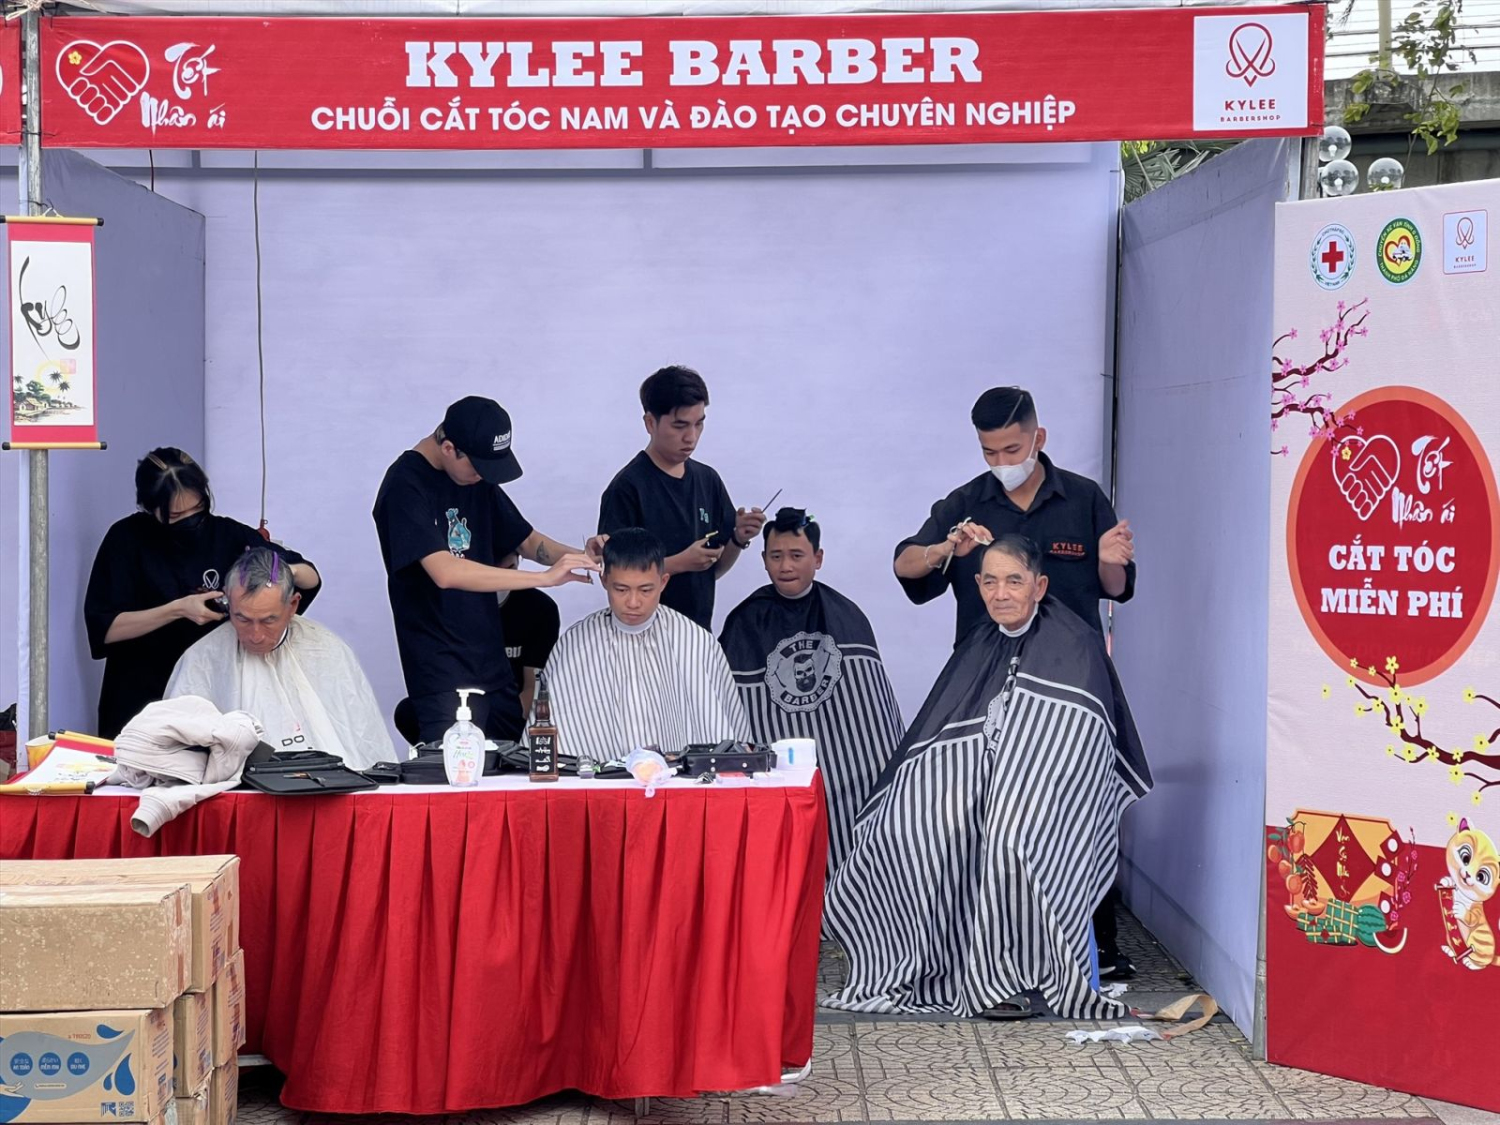 Nhóm cắt tóc mở cửa tiệm cắt tóc 0 đồng tại hội chợ Nhân ái. Ảnh: Thanh Hoàng